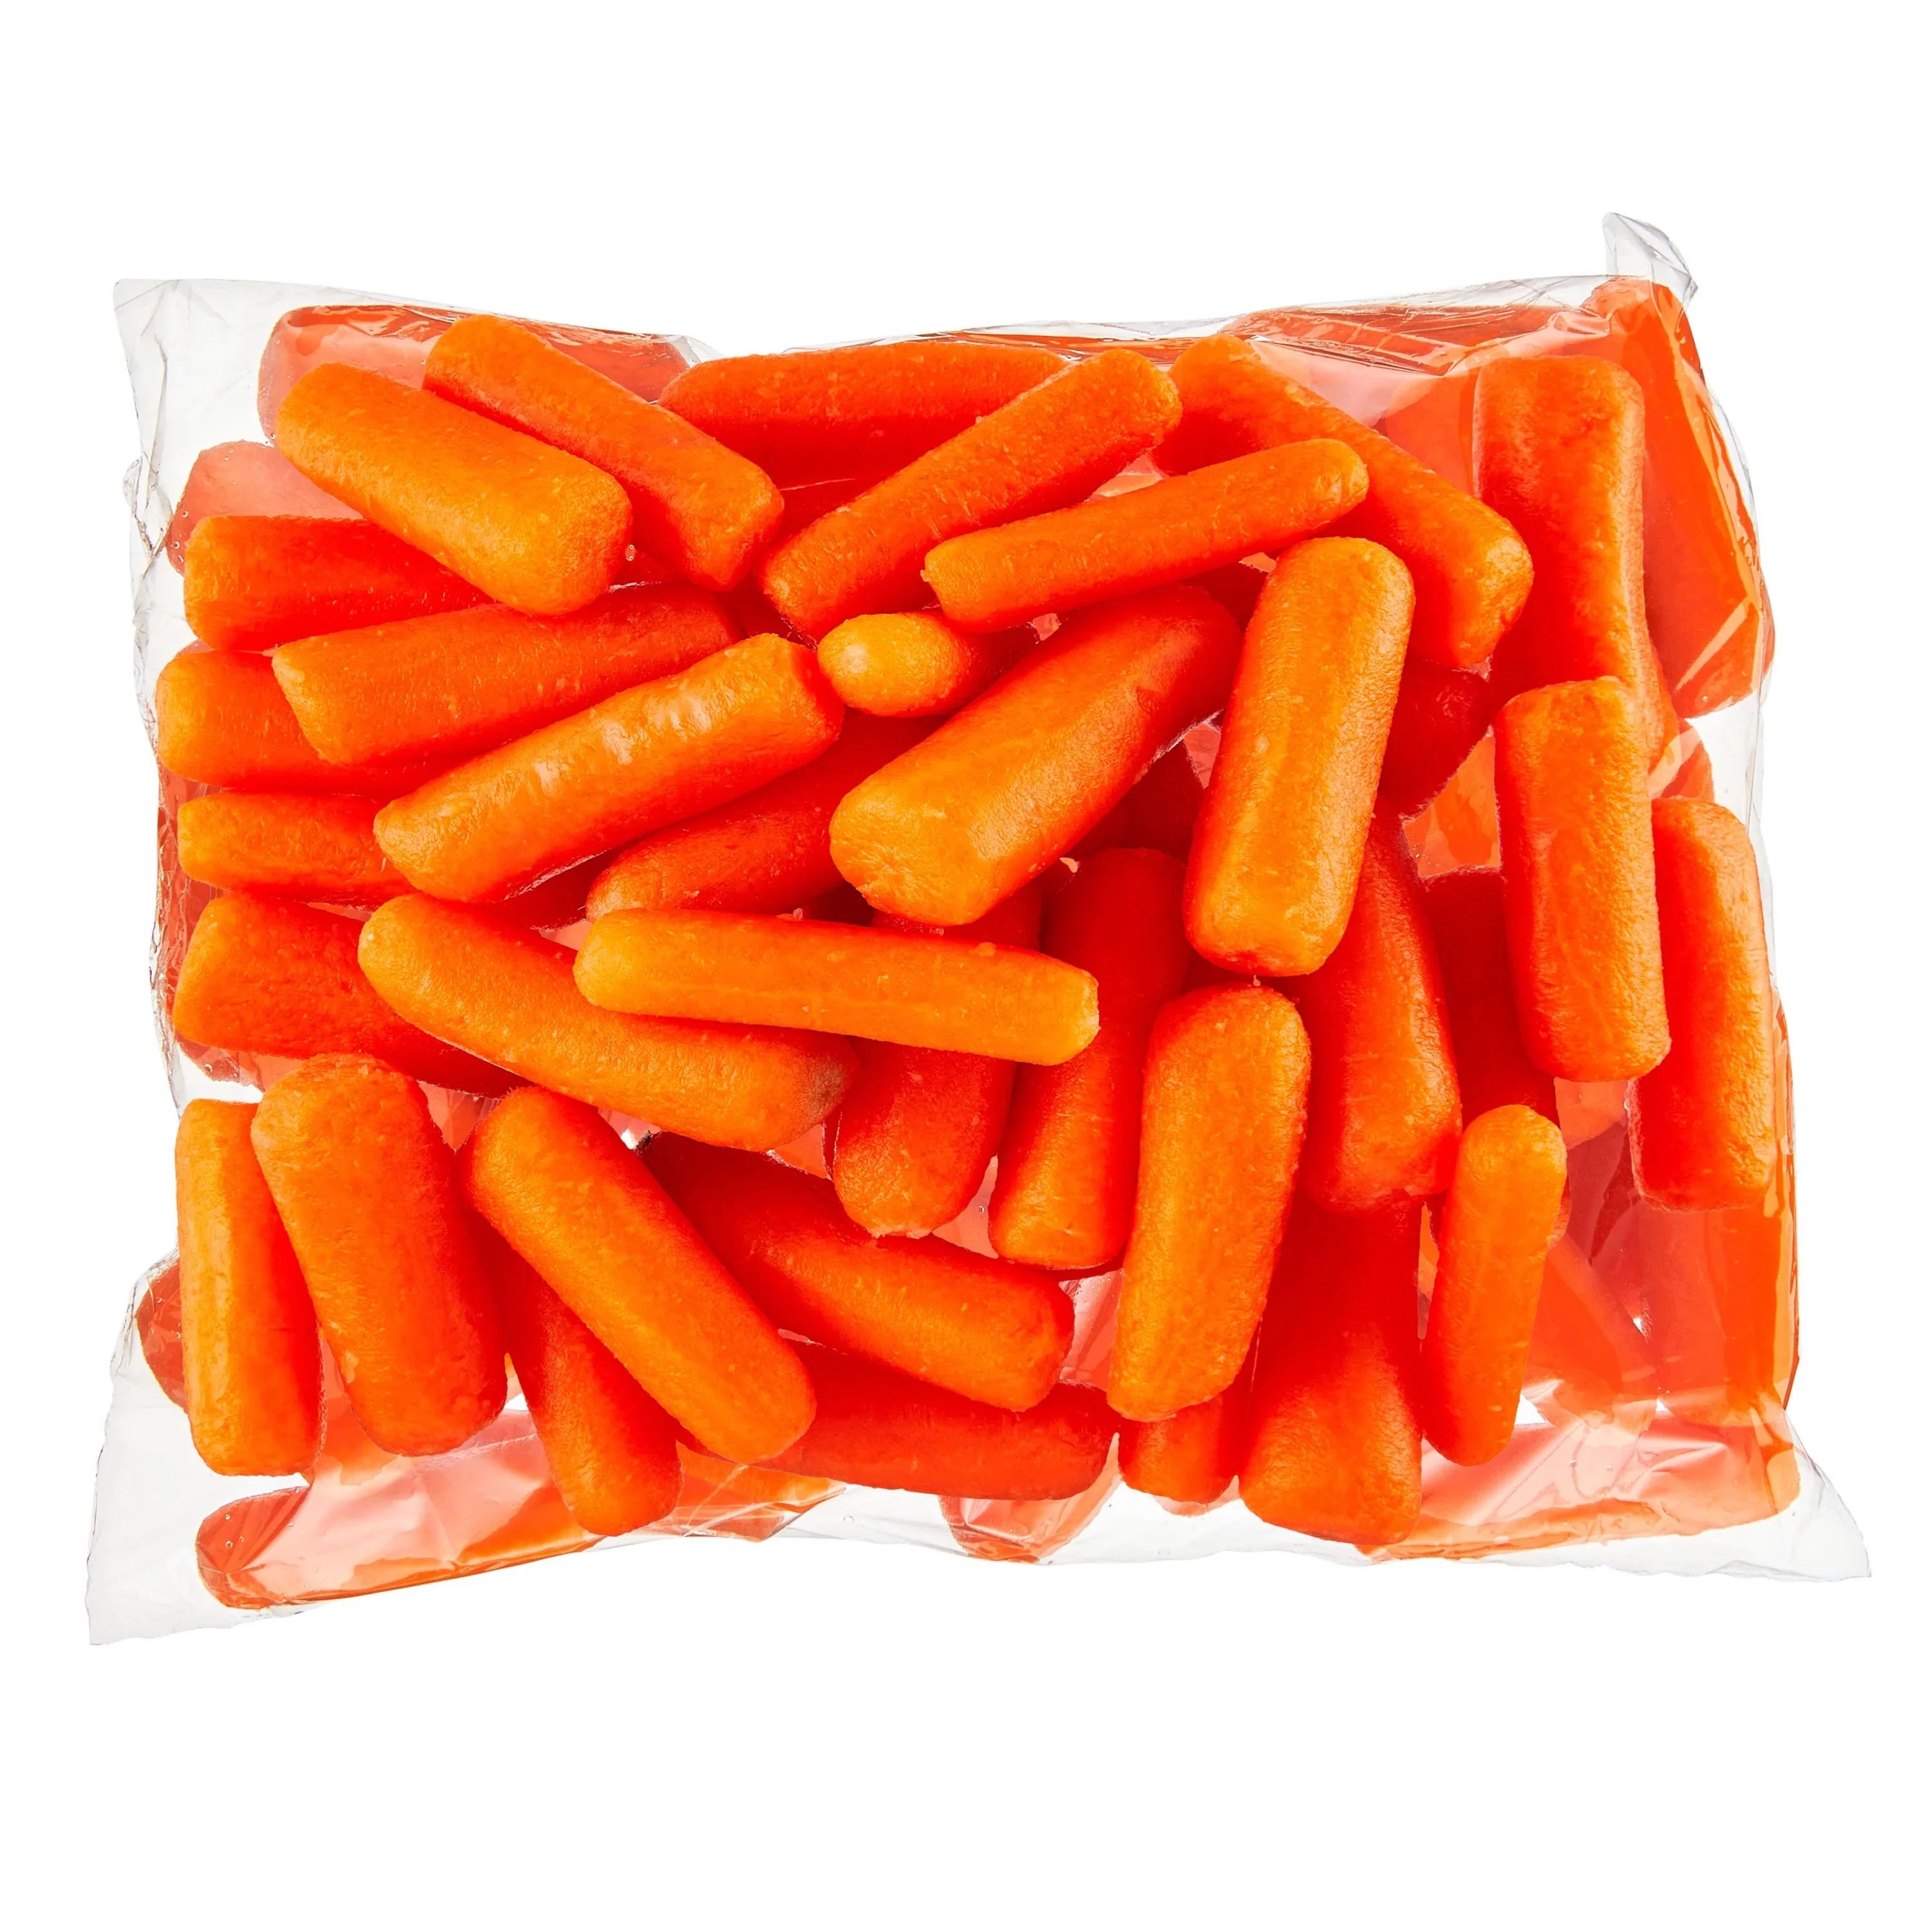 Fresh Baby-Cut Carrots, 1lb Bag | Walmart (US)